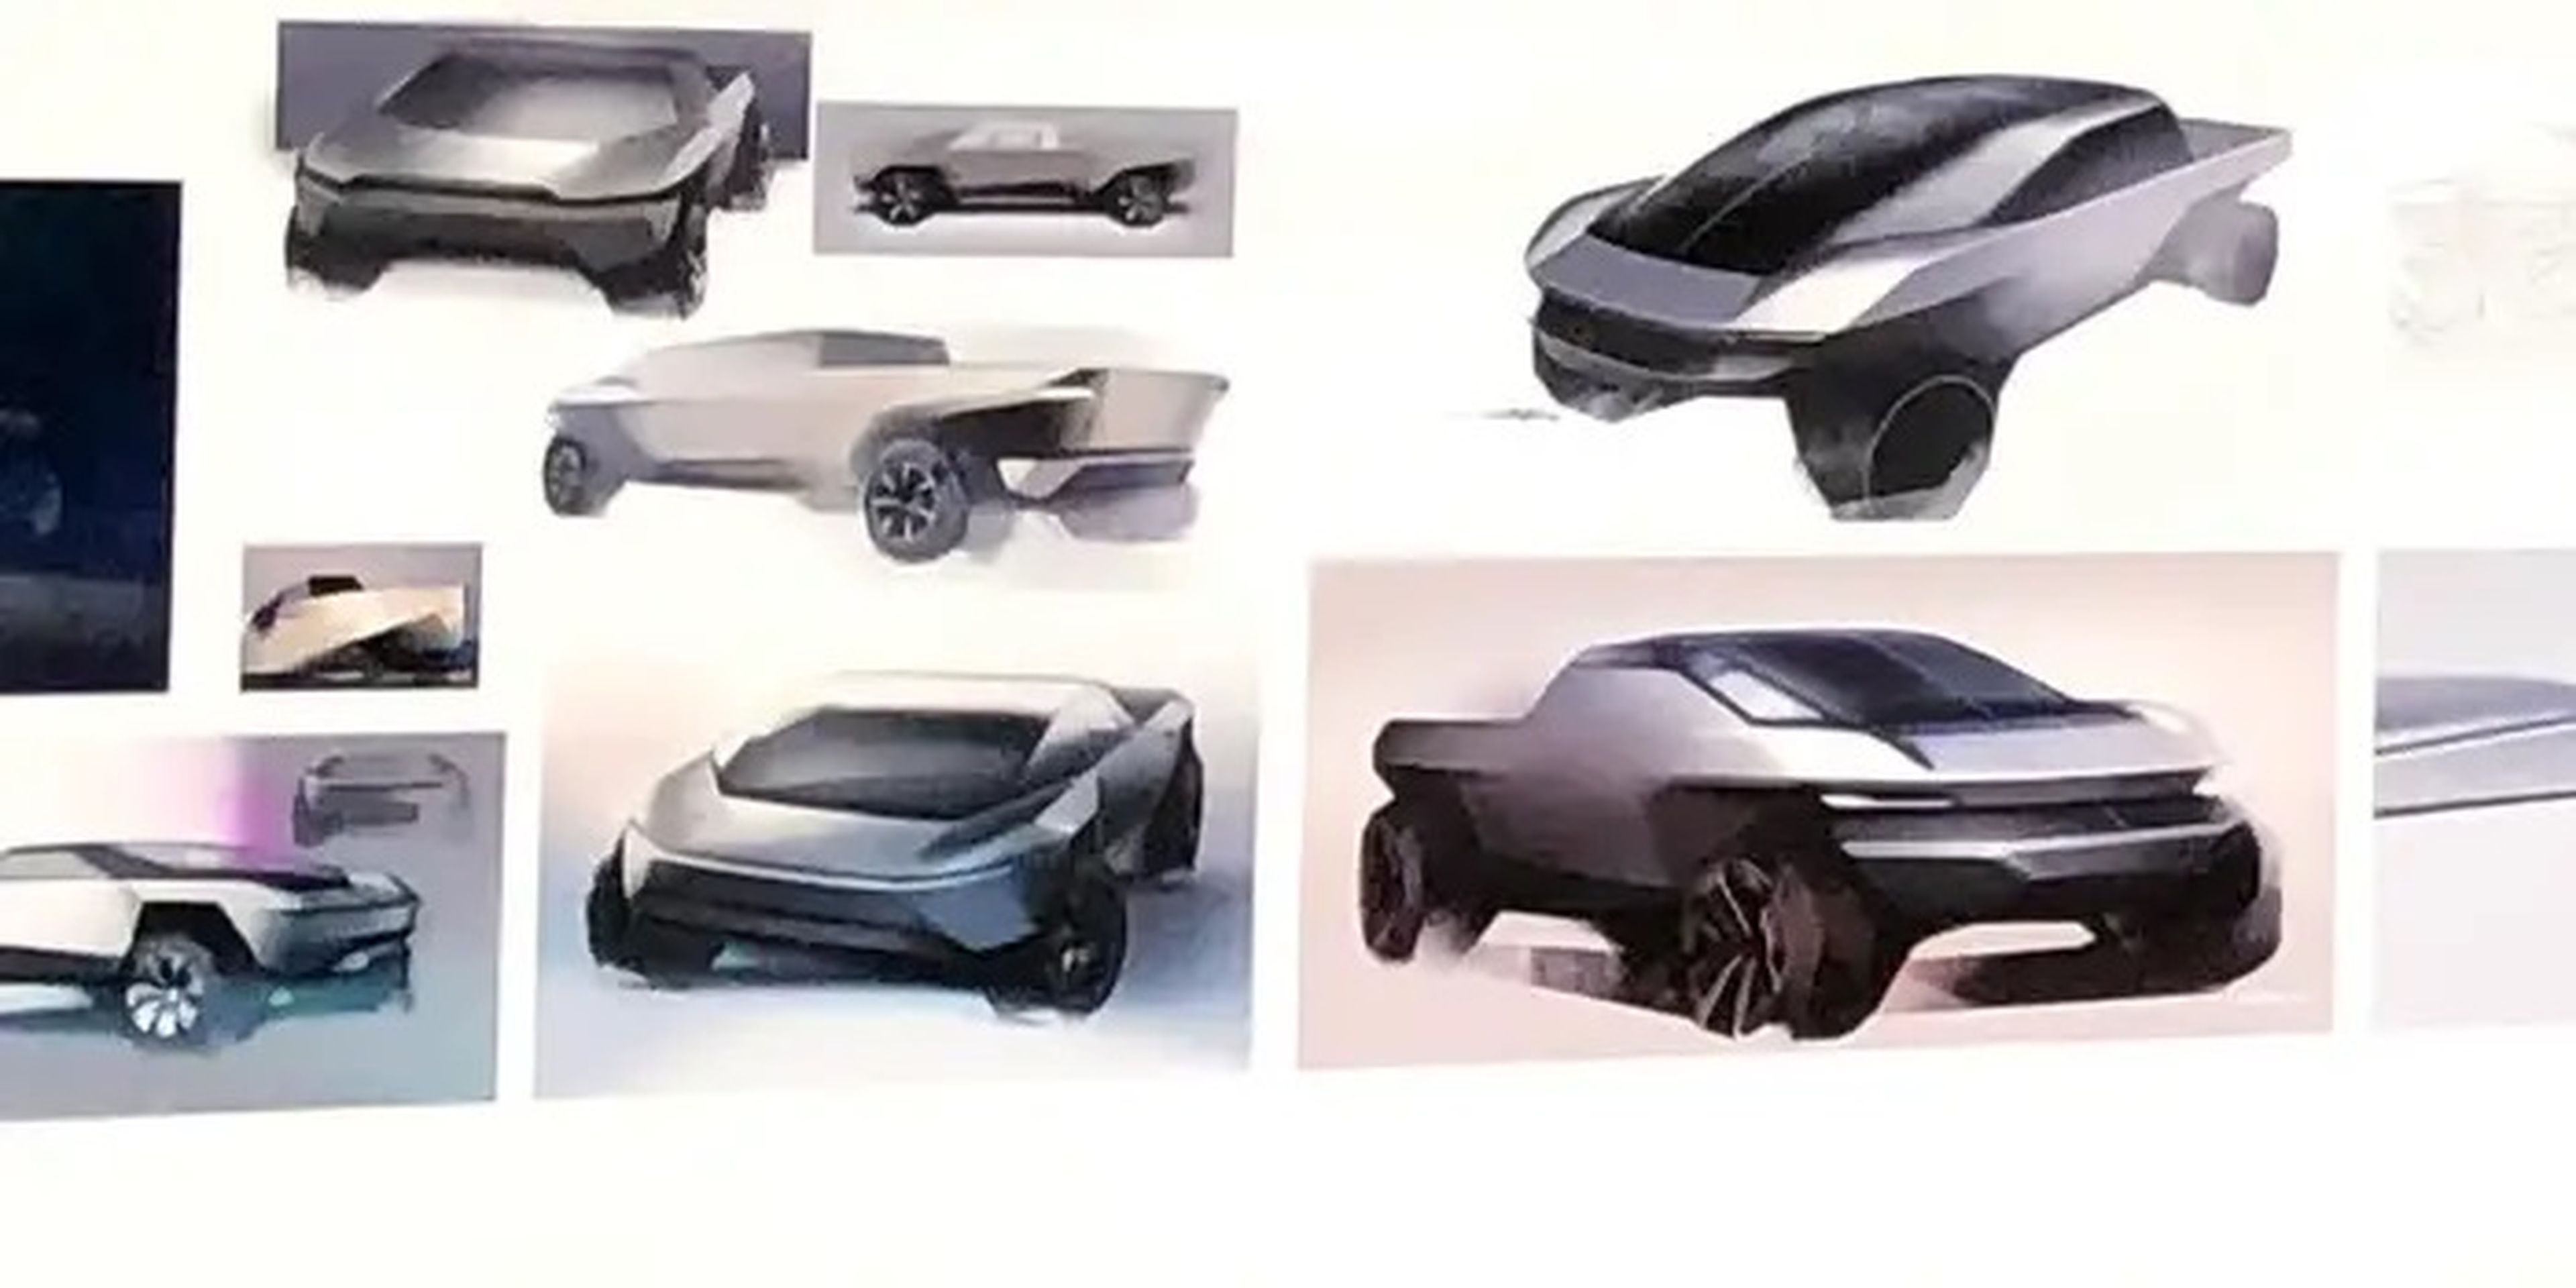 Otros bocetos de la imagen recuerdan más al prototipo actual de Tesla.